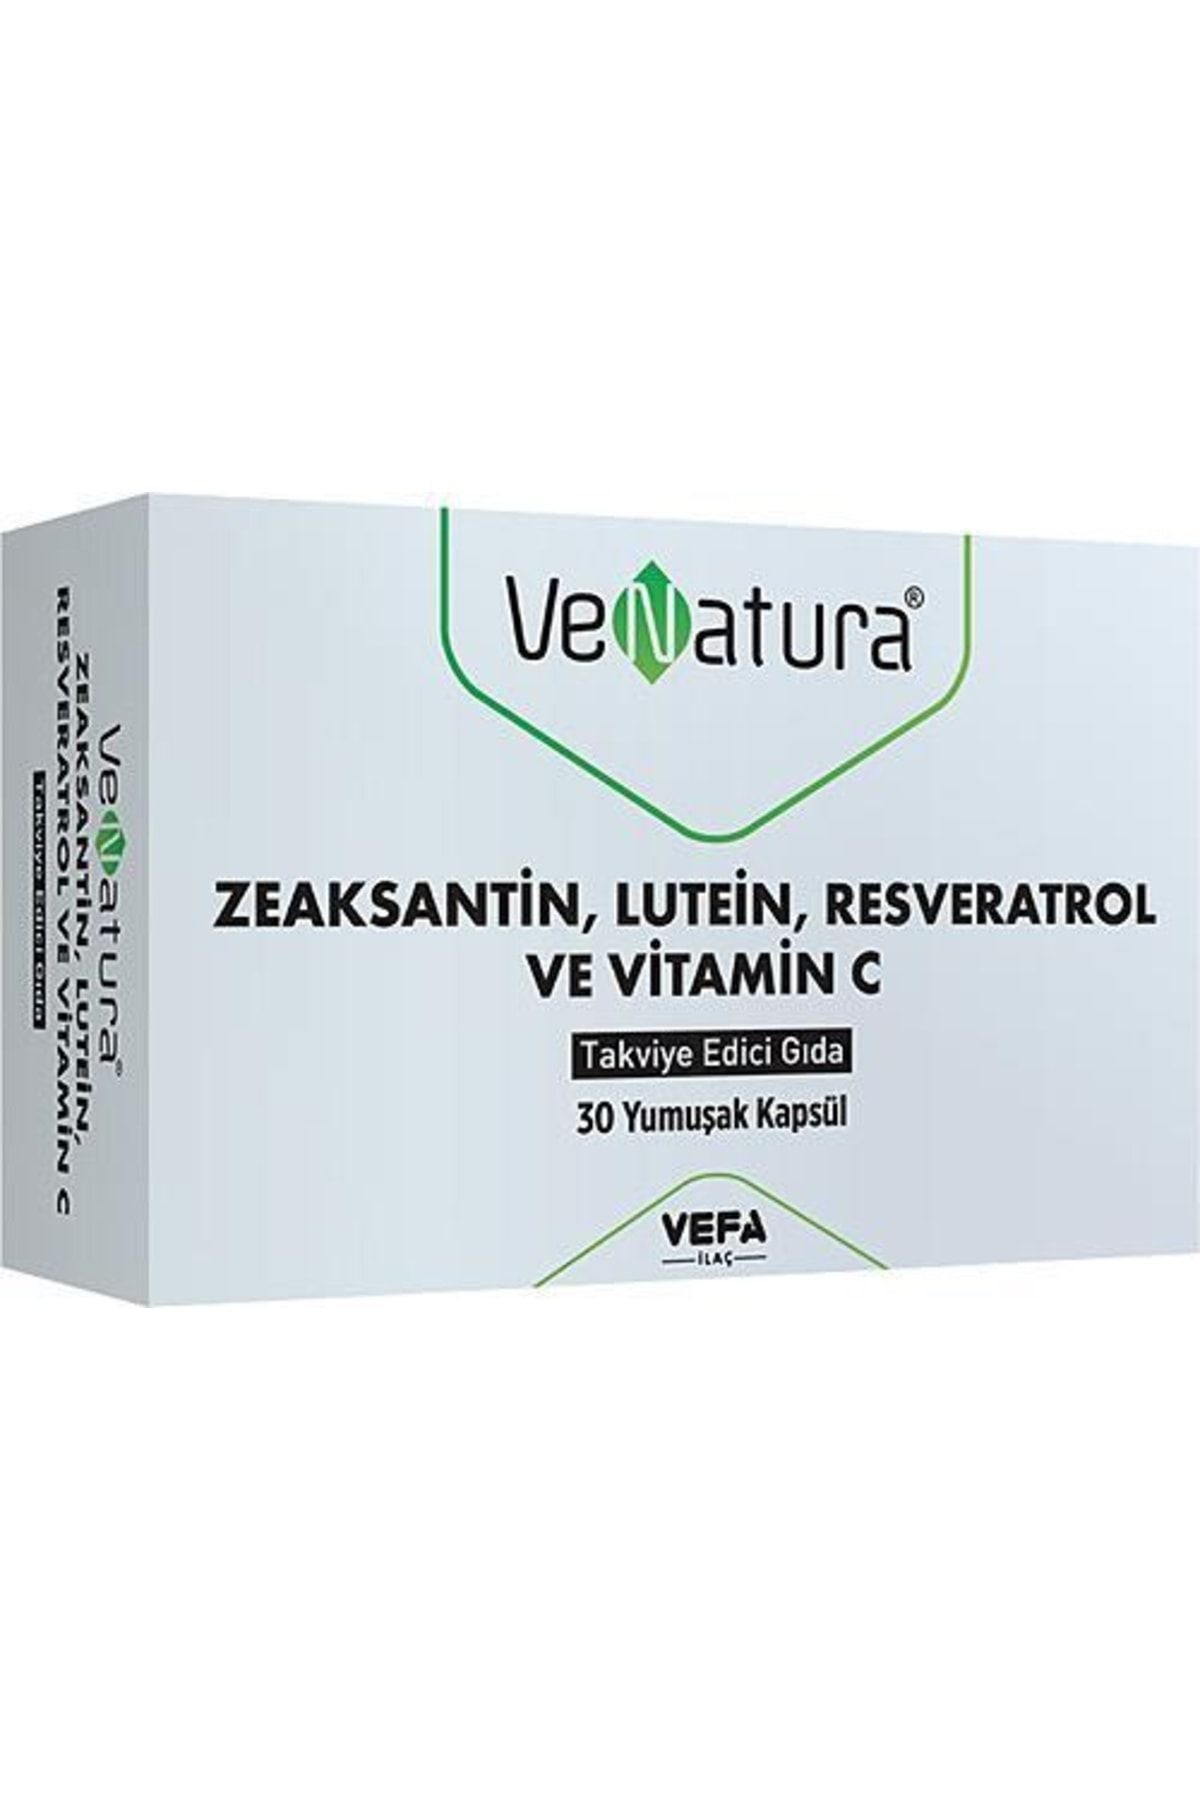 Venatura Zeaksantin Lutein Resveratrol Ve Vitamin C Takviye Edici Gıda 30 Yumuşak Kapsül